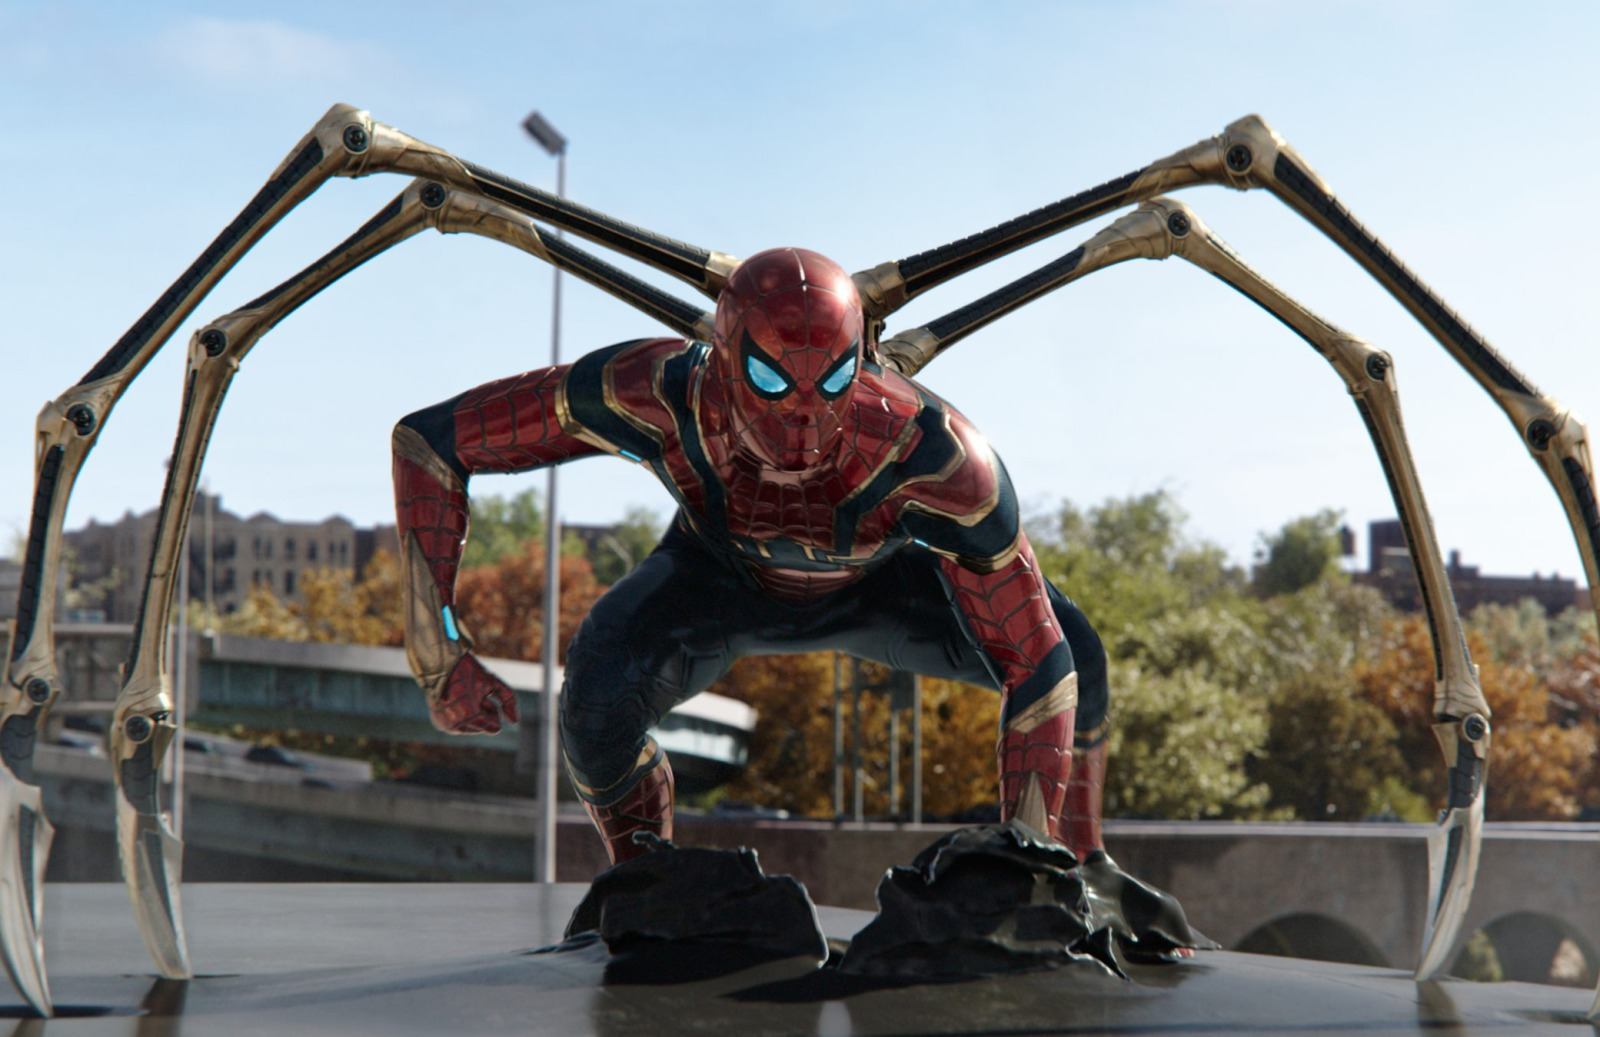 SpiderMan: No Way Home encabeza los grandes estrenos de julio en Movistar Plus+